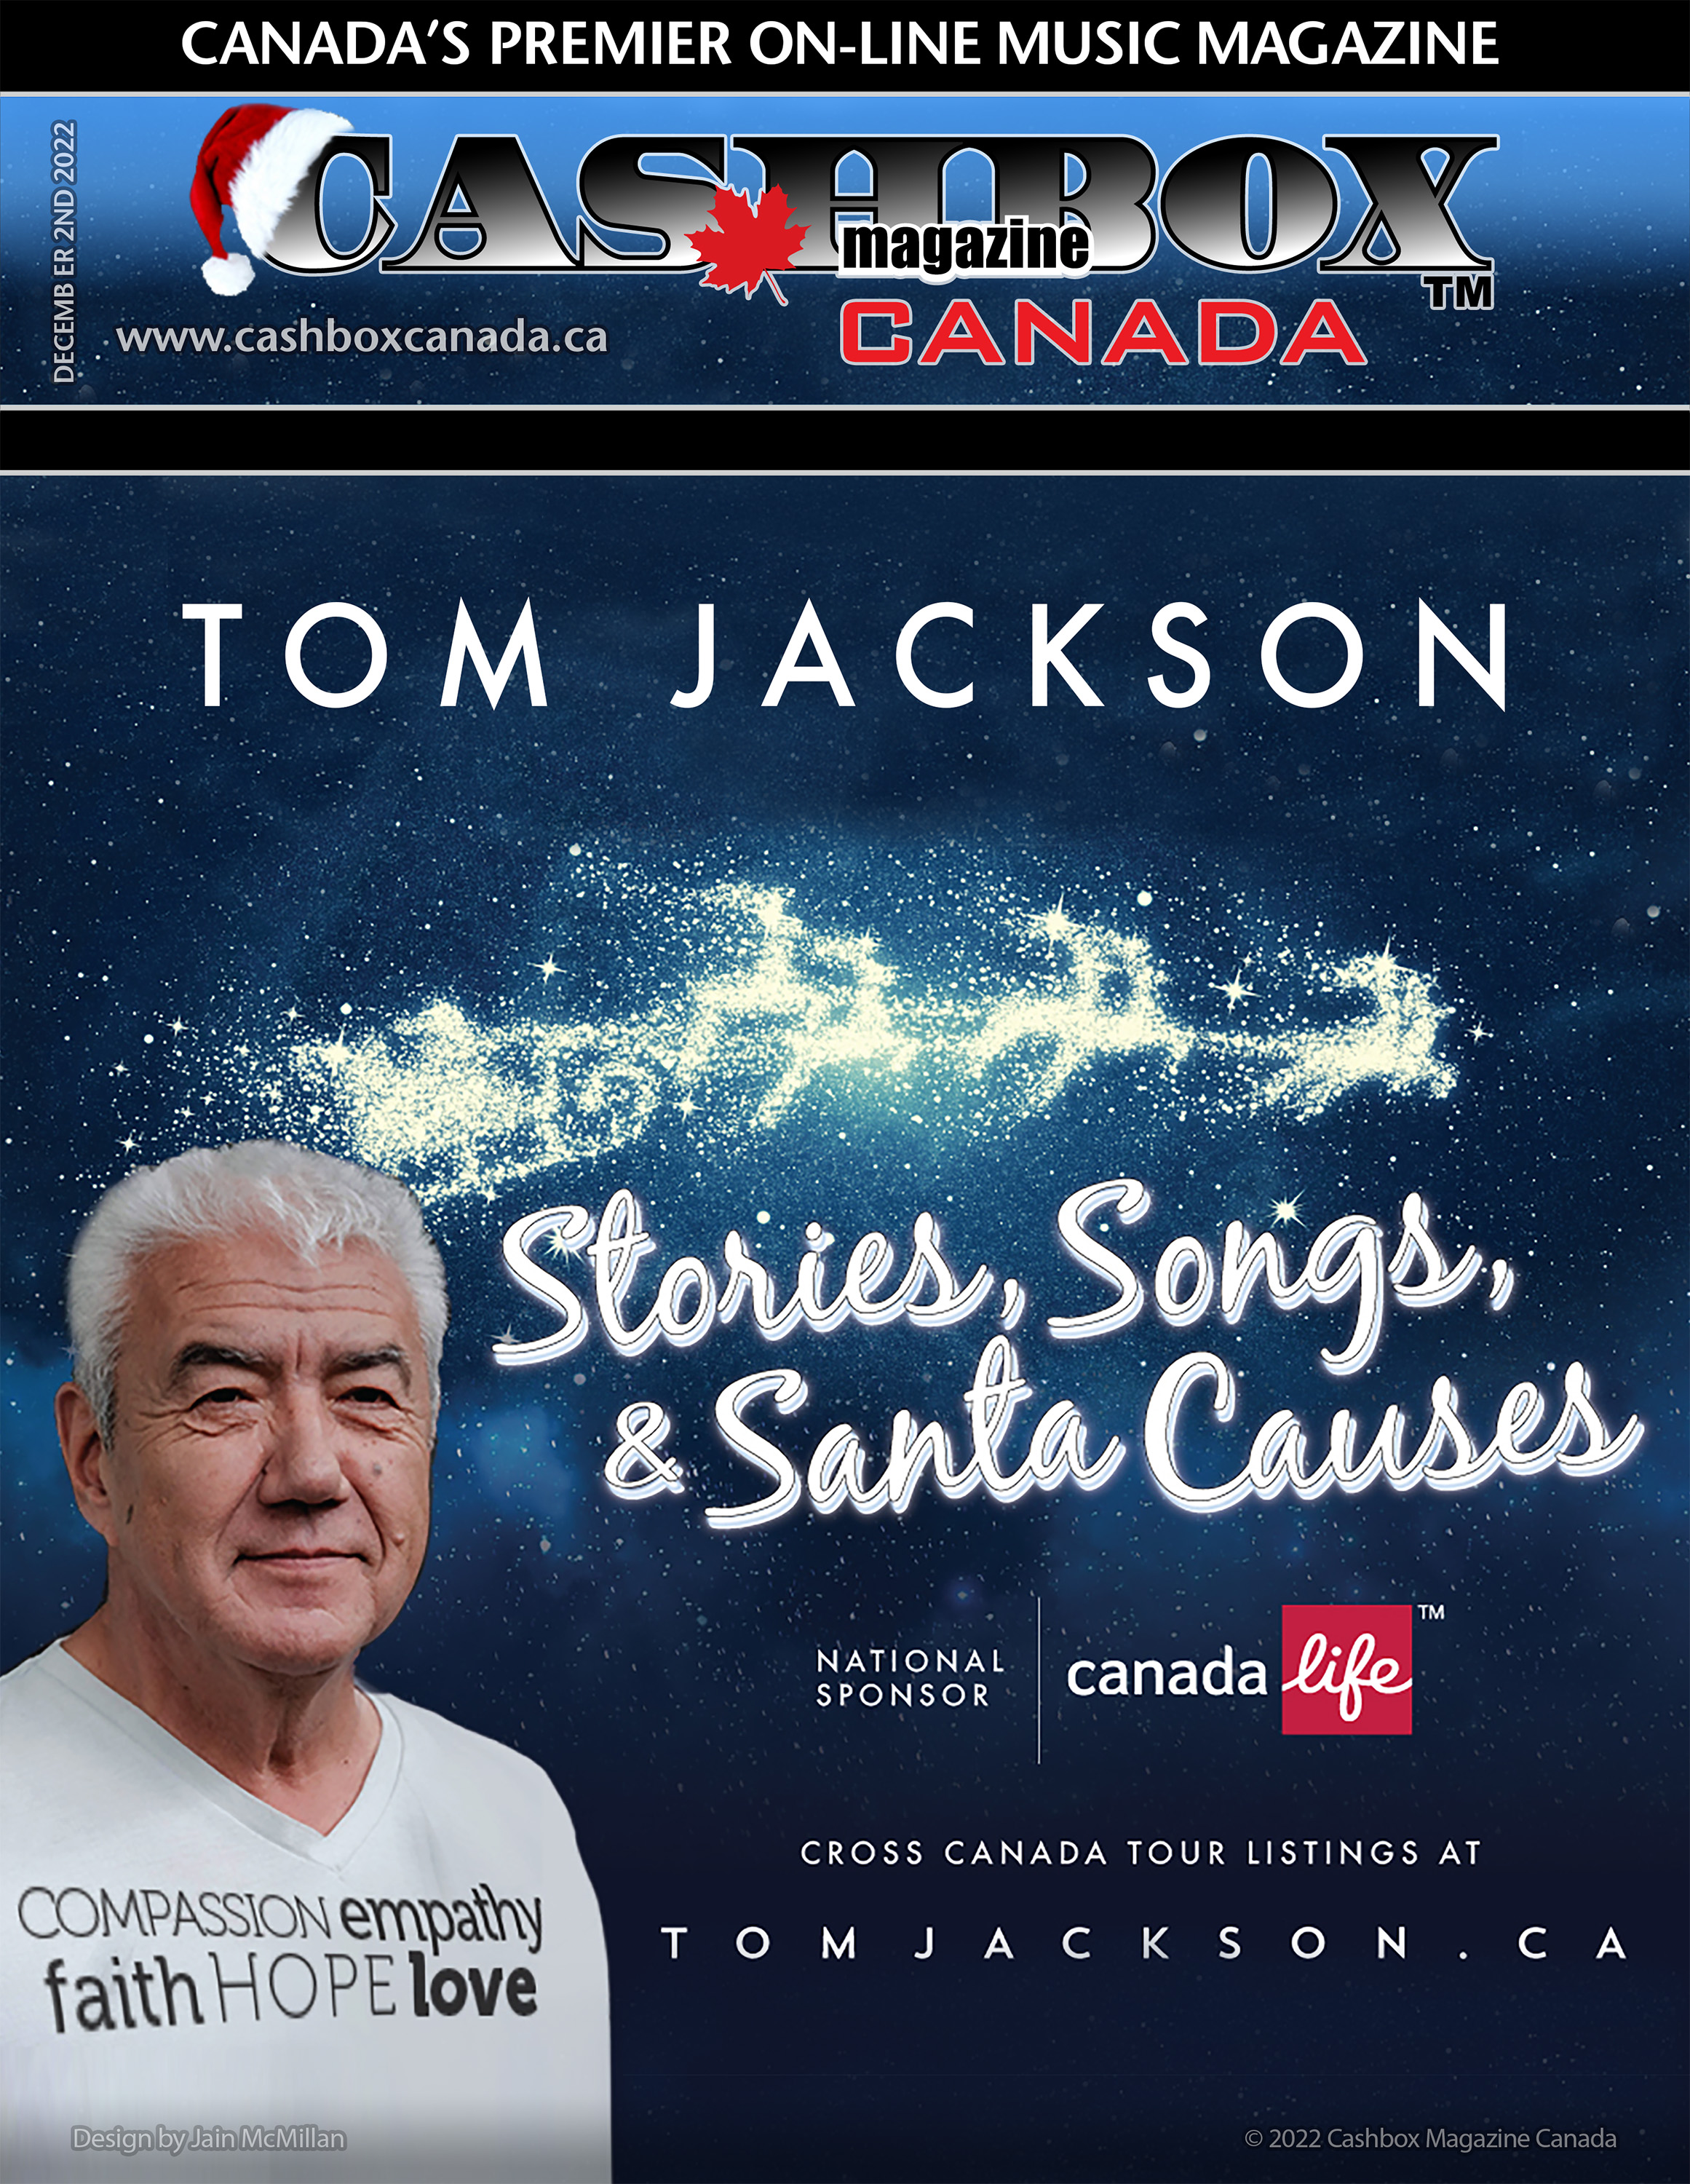 tom jackson tour dates